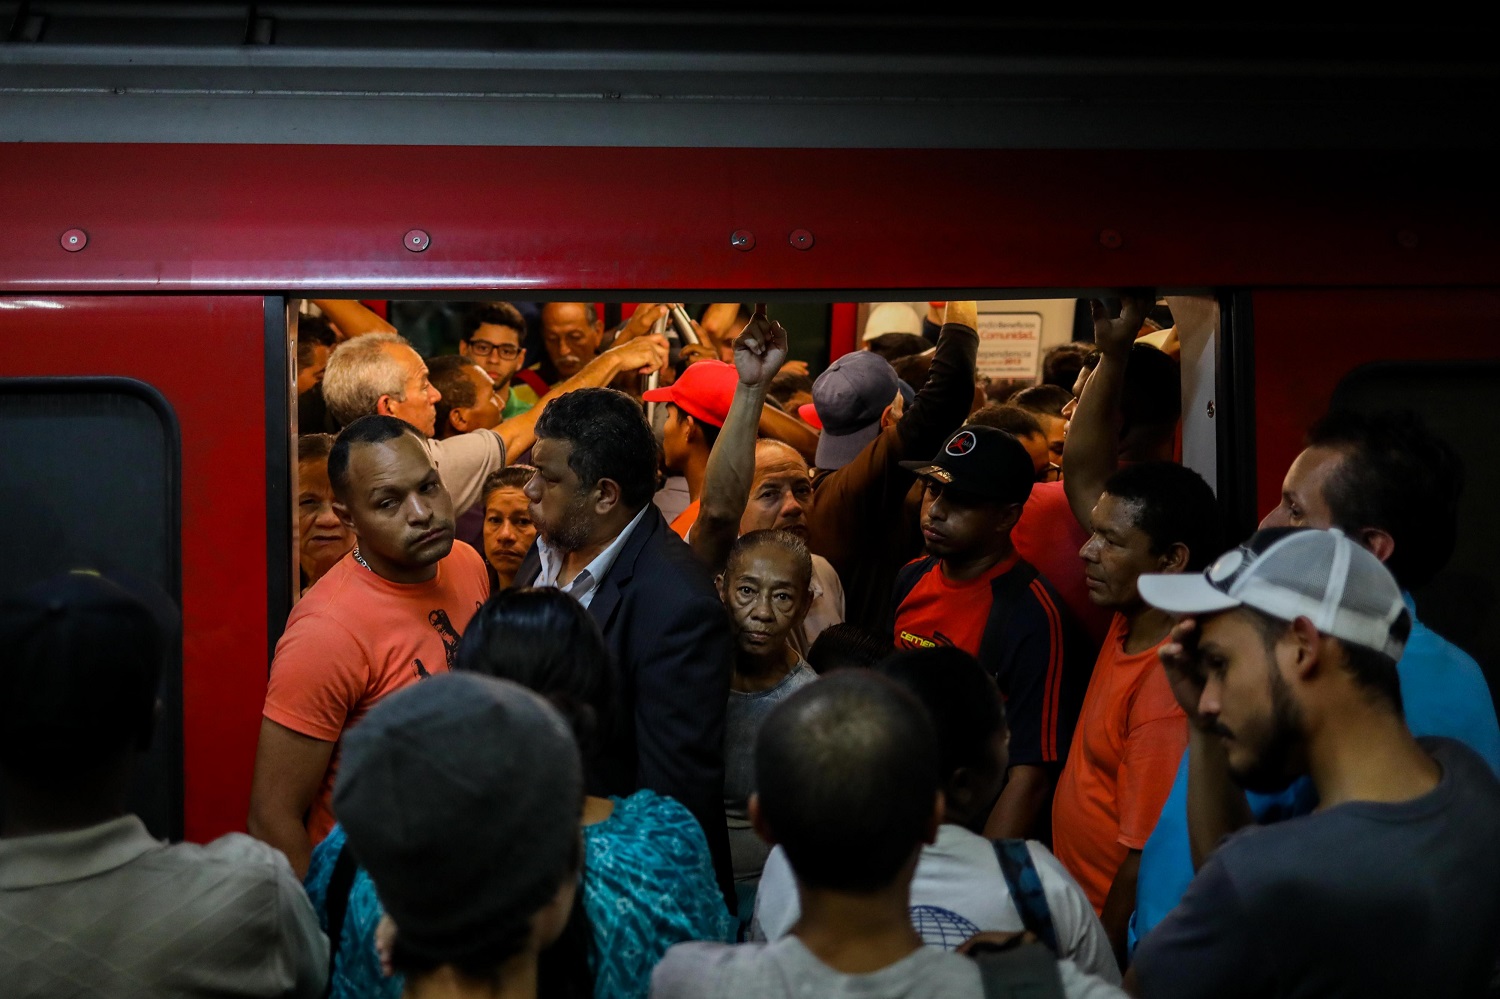 El chiste del día: Metro de Caracas avanza en “calidad del servicio” luego de reactivación del cobro de pasaje, según su presidente